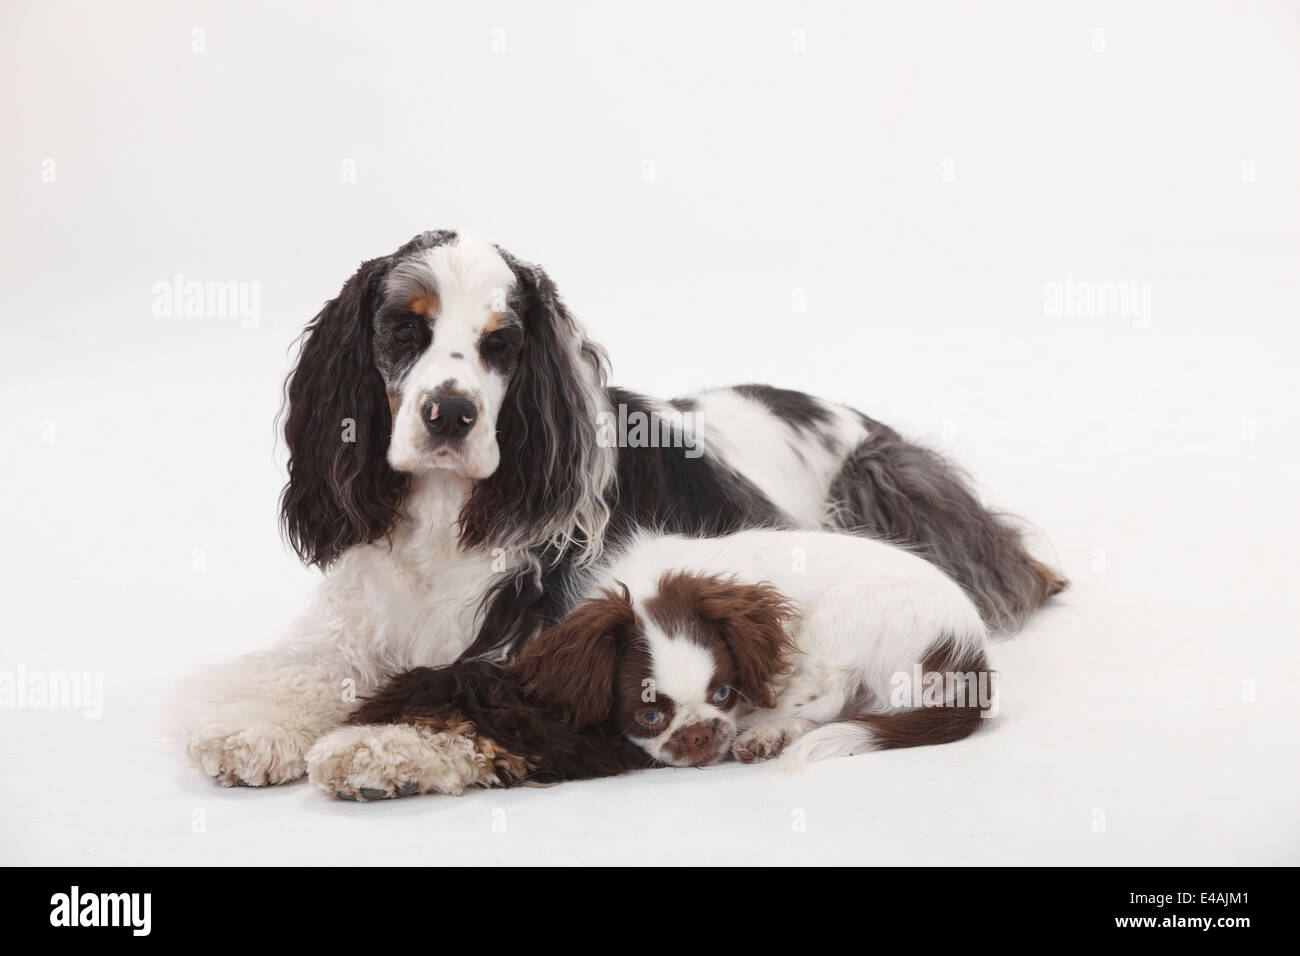 American Cocker Spaniel e razza cane, cucciolo, 3 mesi |American Cocker Spaniel und Mischlingshund, Welpe, 3 Monate Foto Stock